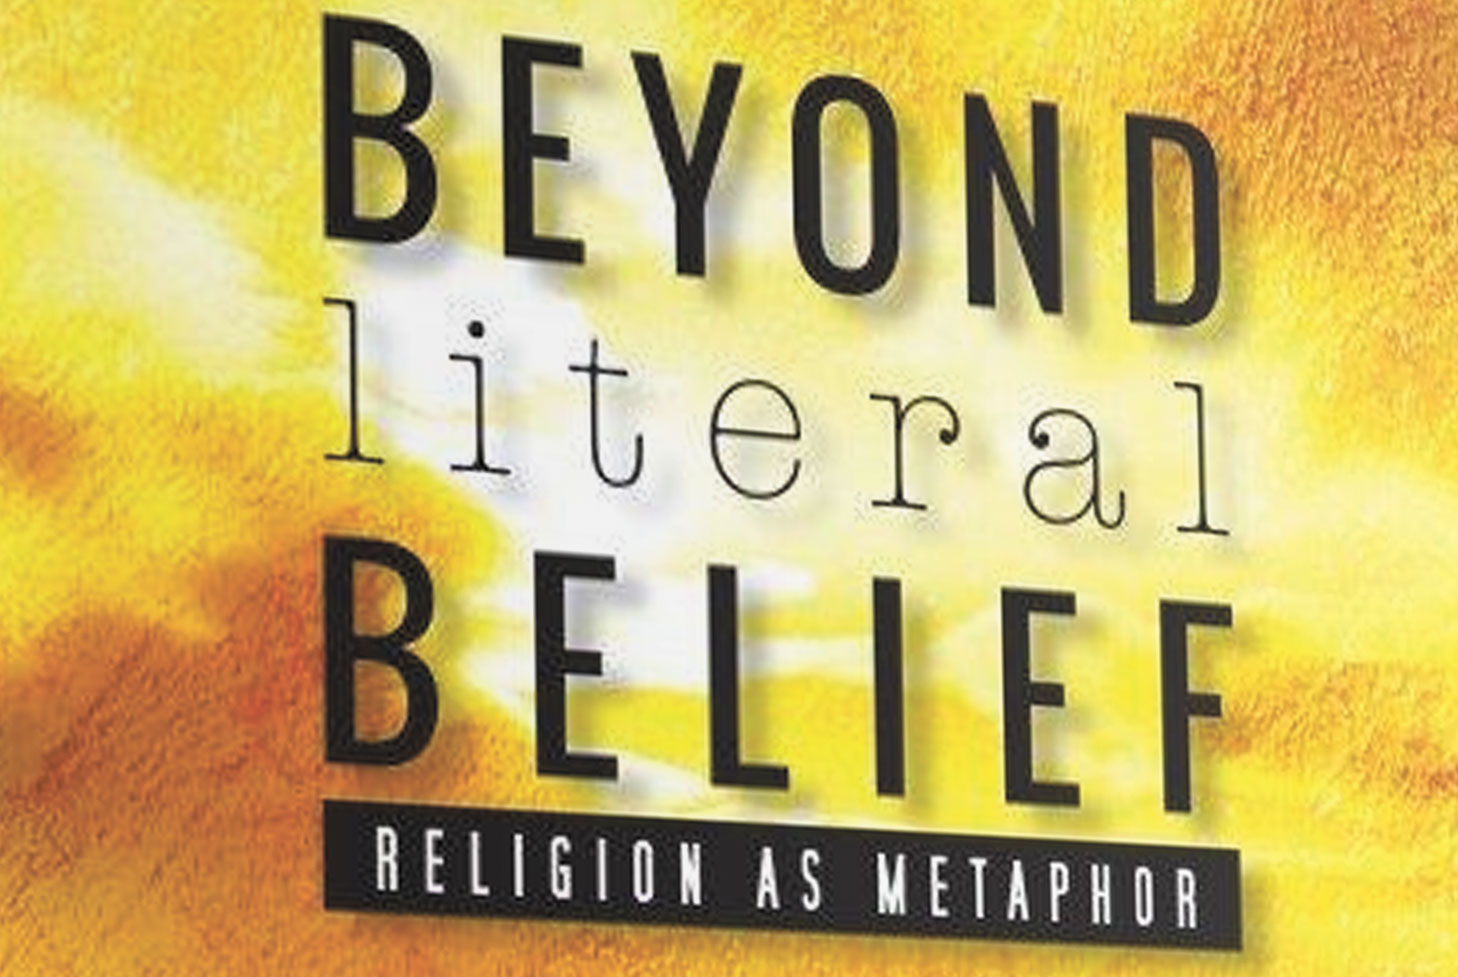 Beyond literal belief